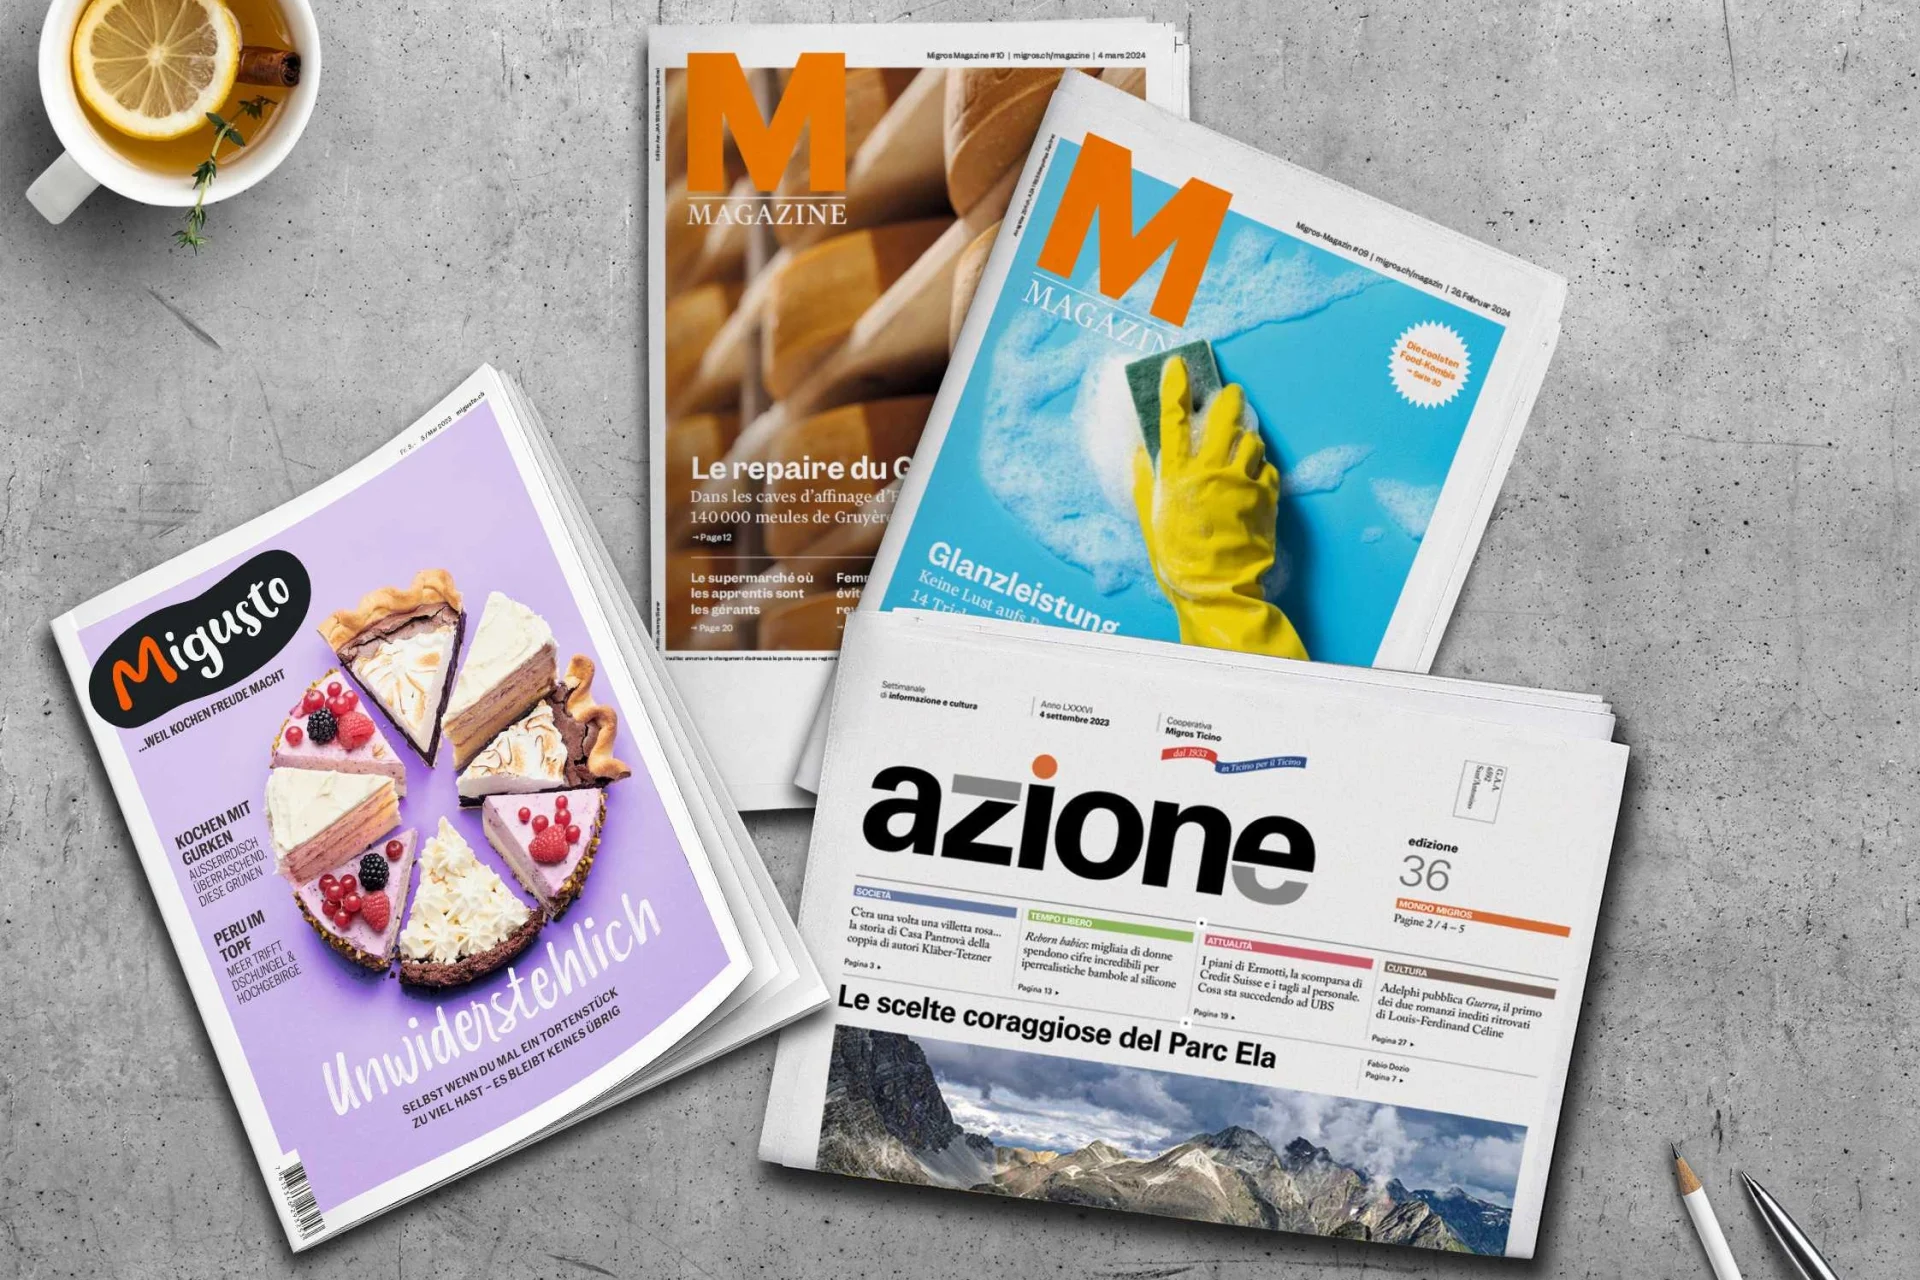 Ausgaben vom Migros Magazin, dem Migusto Kochmagazin und Azione liegen auf einem grauen Tisch.